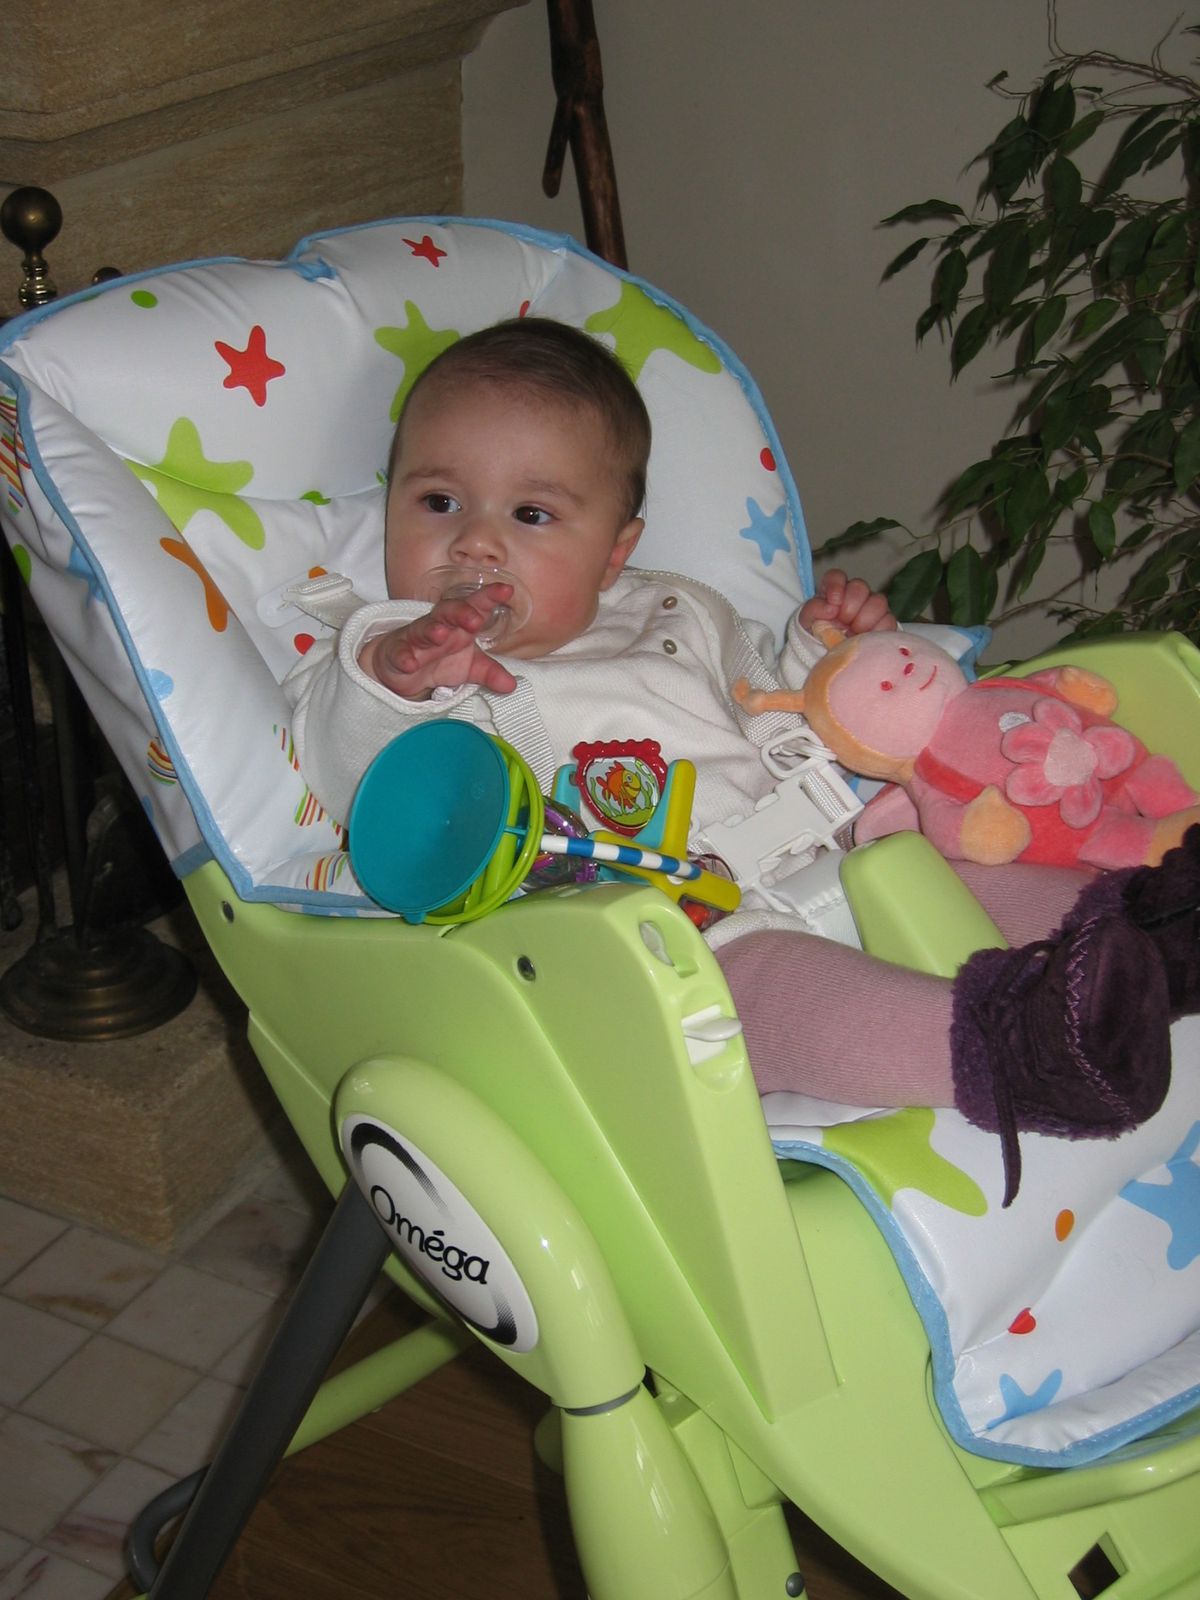 Fiche produit: la chaise haute bébé confort - Le blog de princessemel